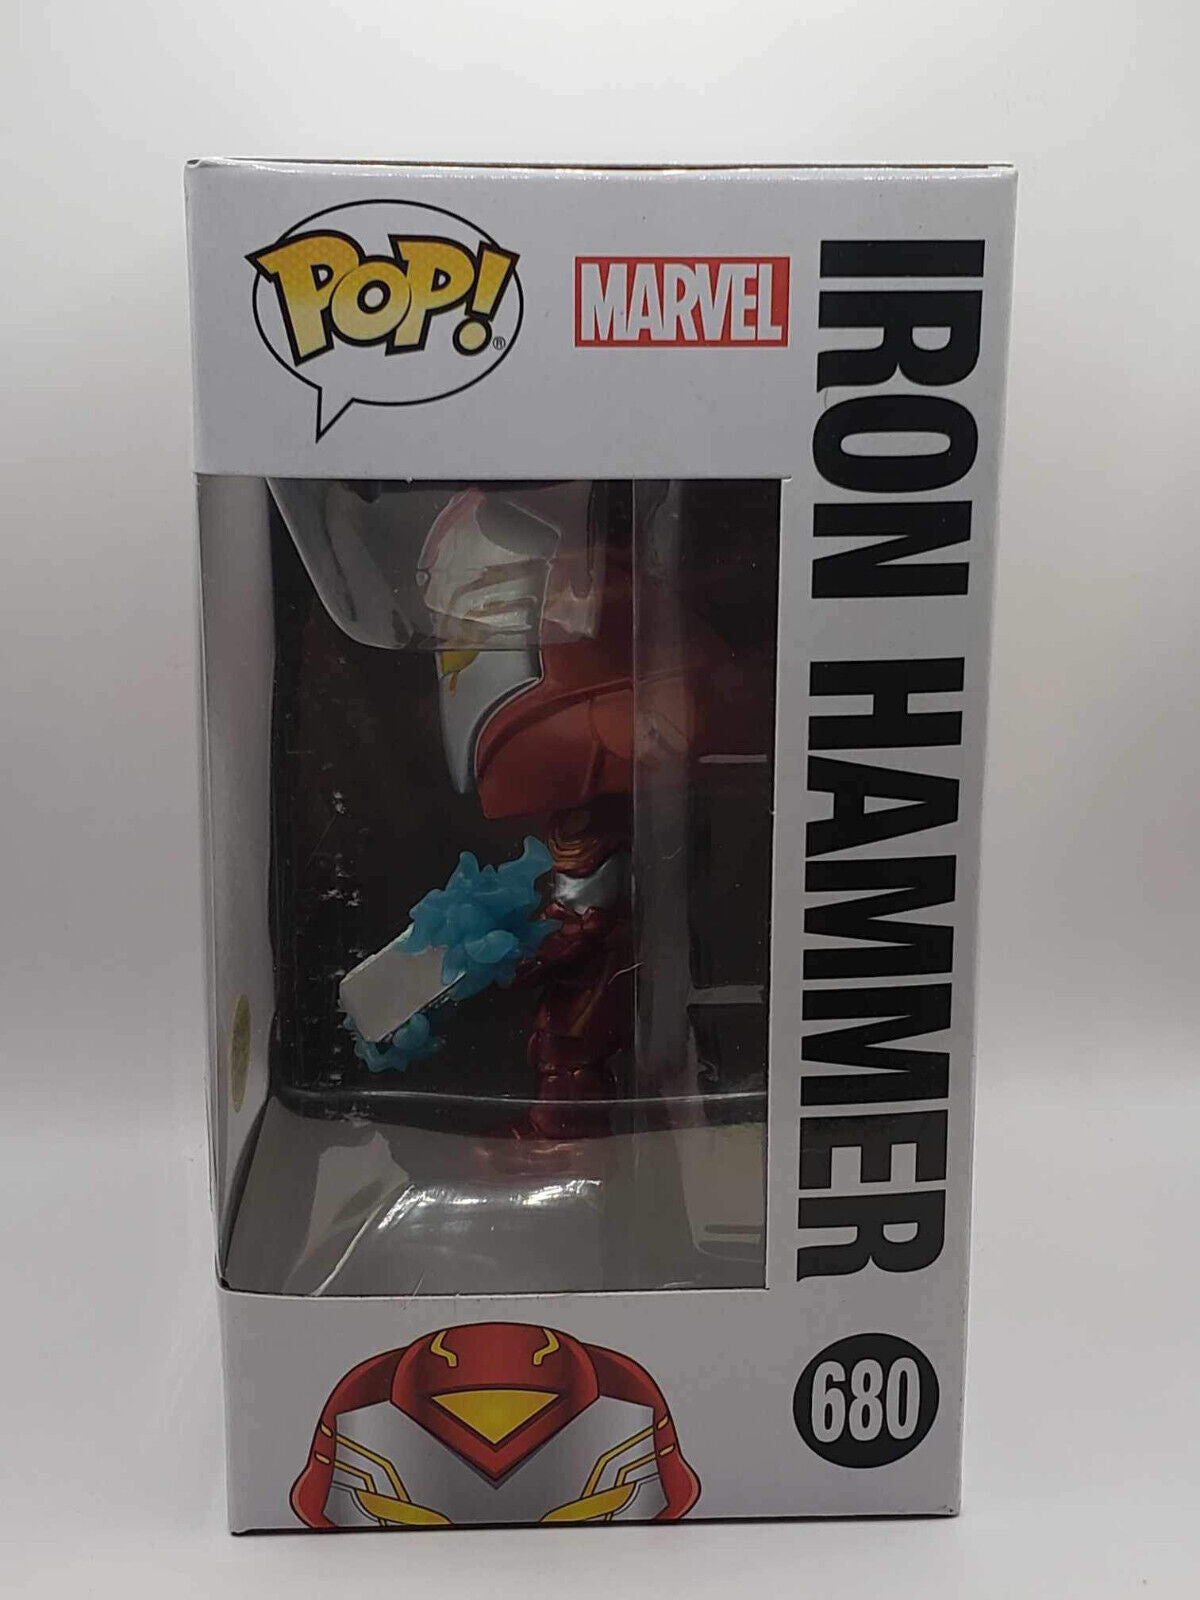 Funko Pop! Marvel Infinity Wars - Iron Hammer #680 Walgreens Exclusive